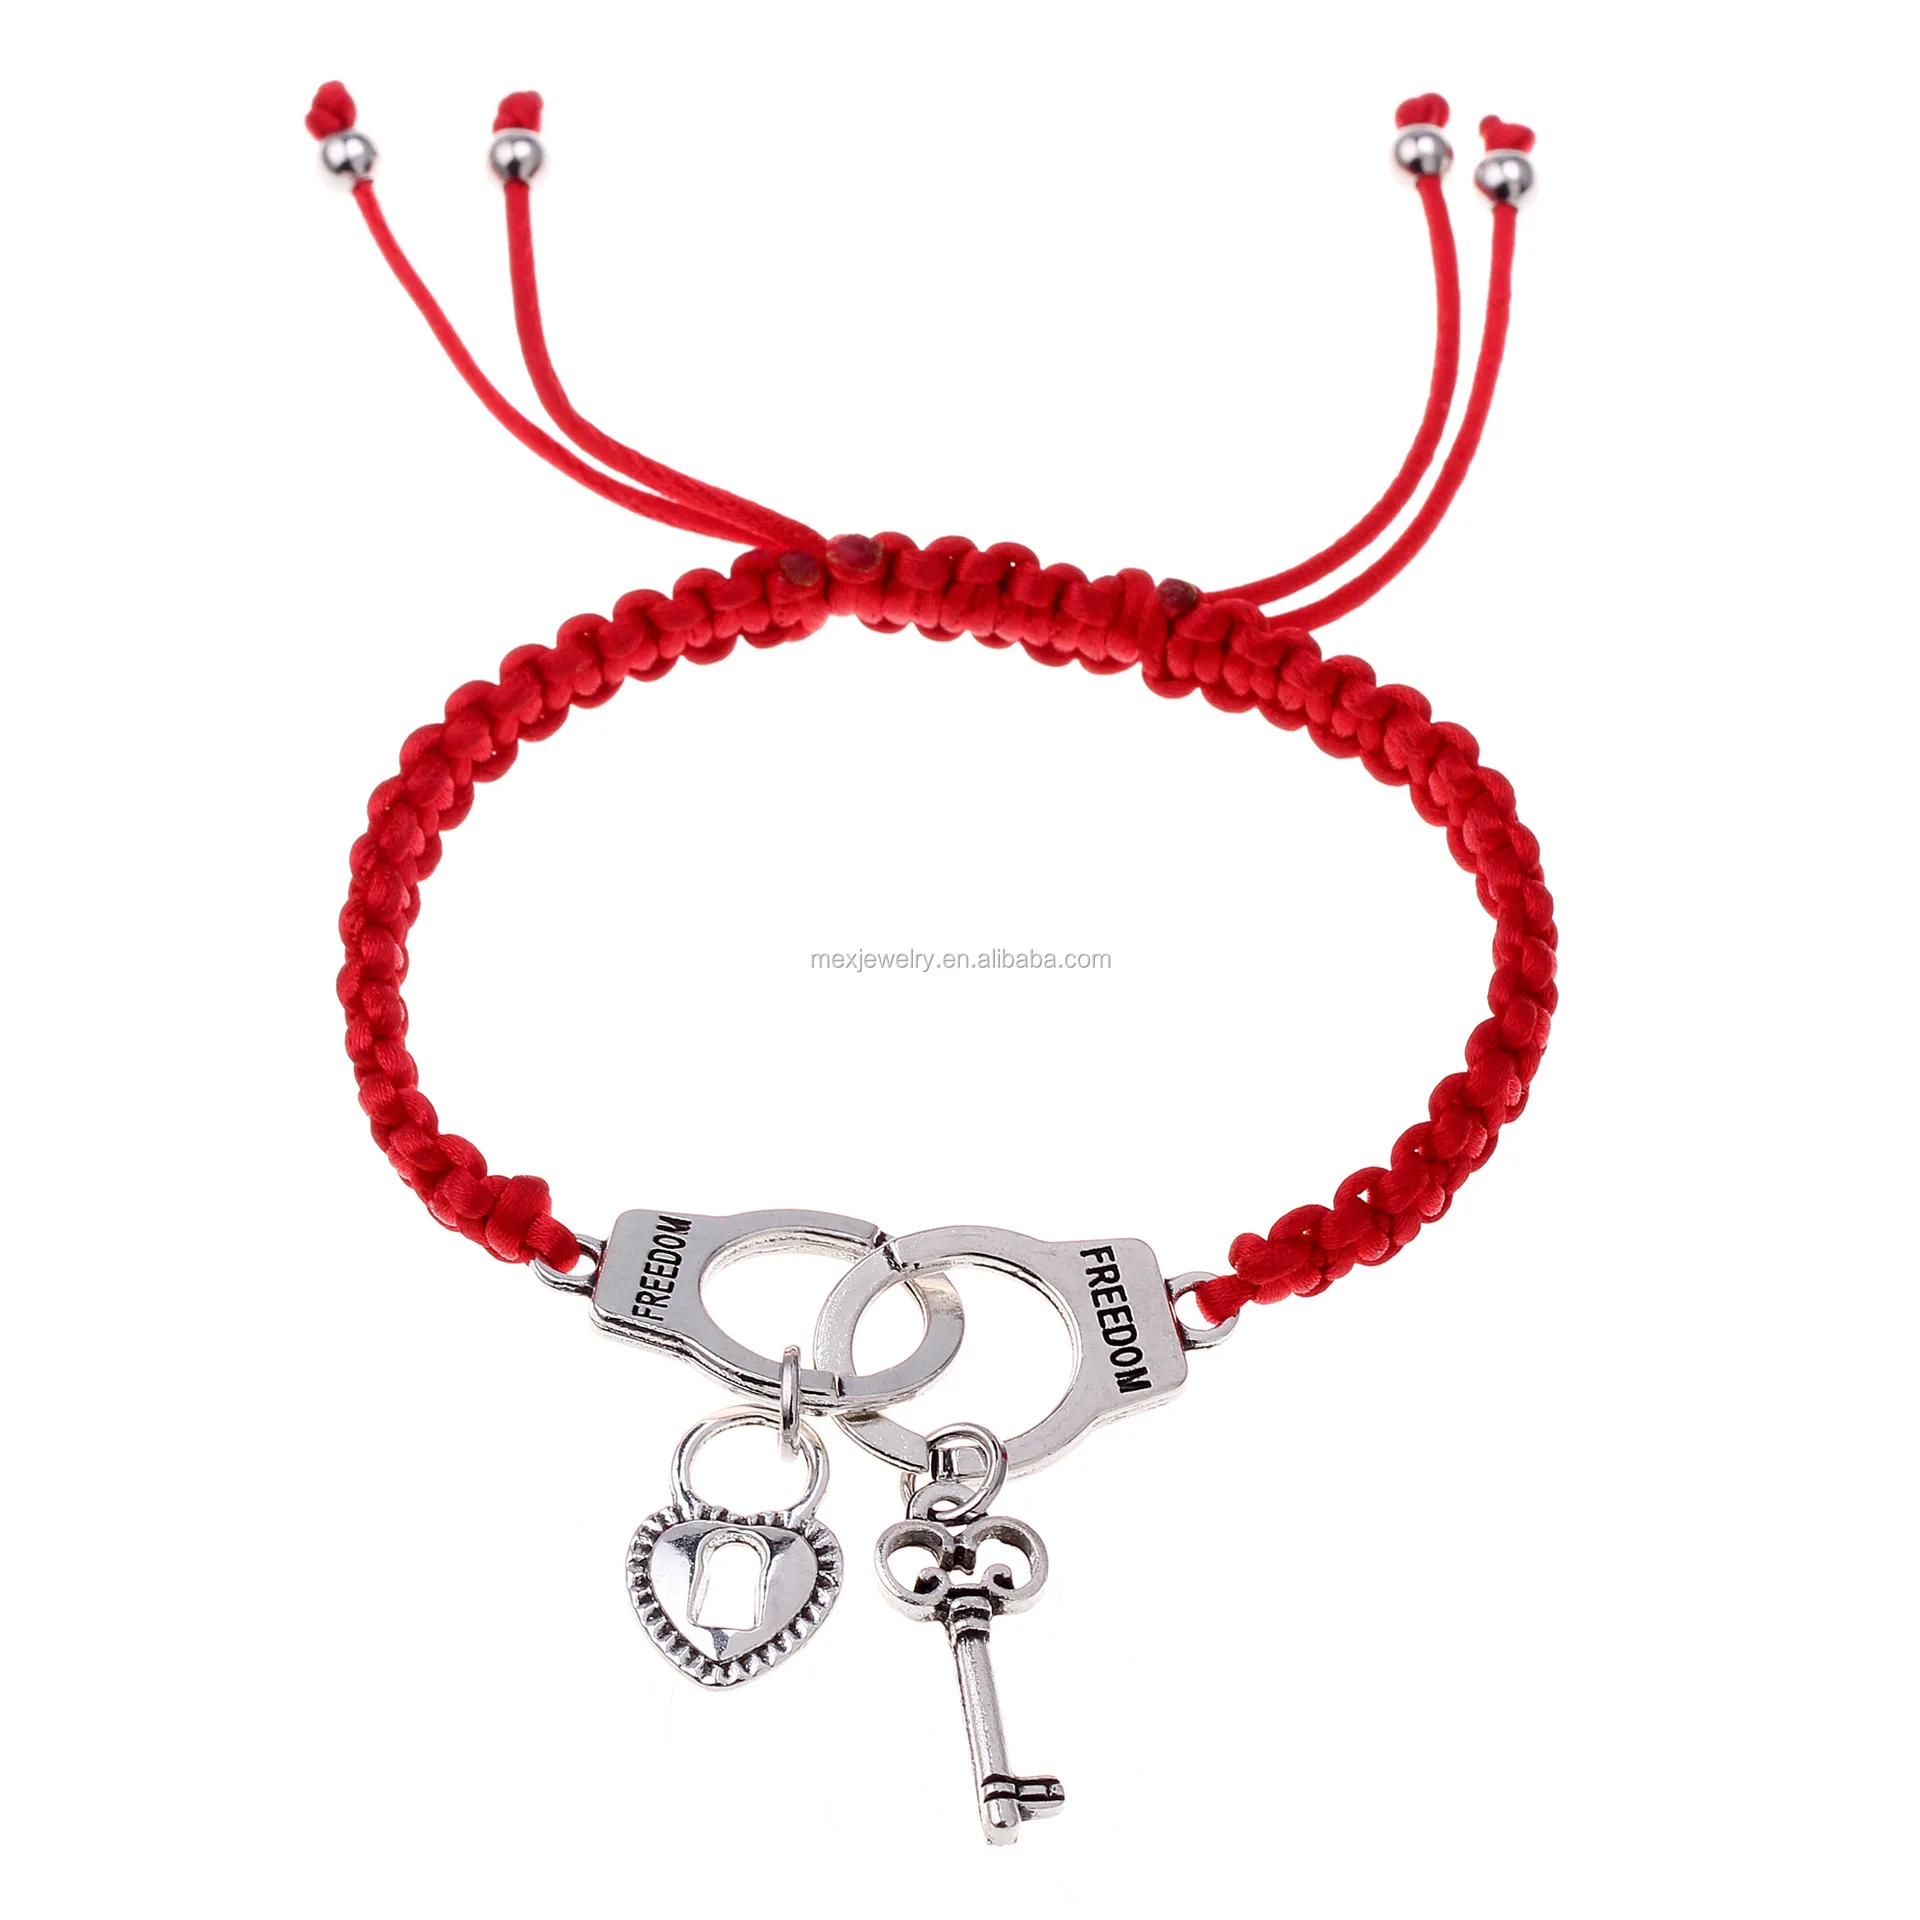 男性女性のための赤いロープラッキーカップルブレスレットを意味するカスタム編組 ラッキー Buy 幸運ブレスレット 赤ロープ幸運ブレスレット カスタムロープブレスレット Product On Alibaba Com